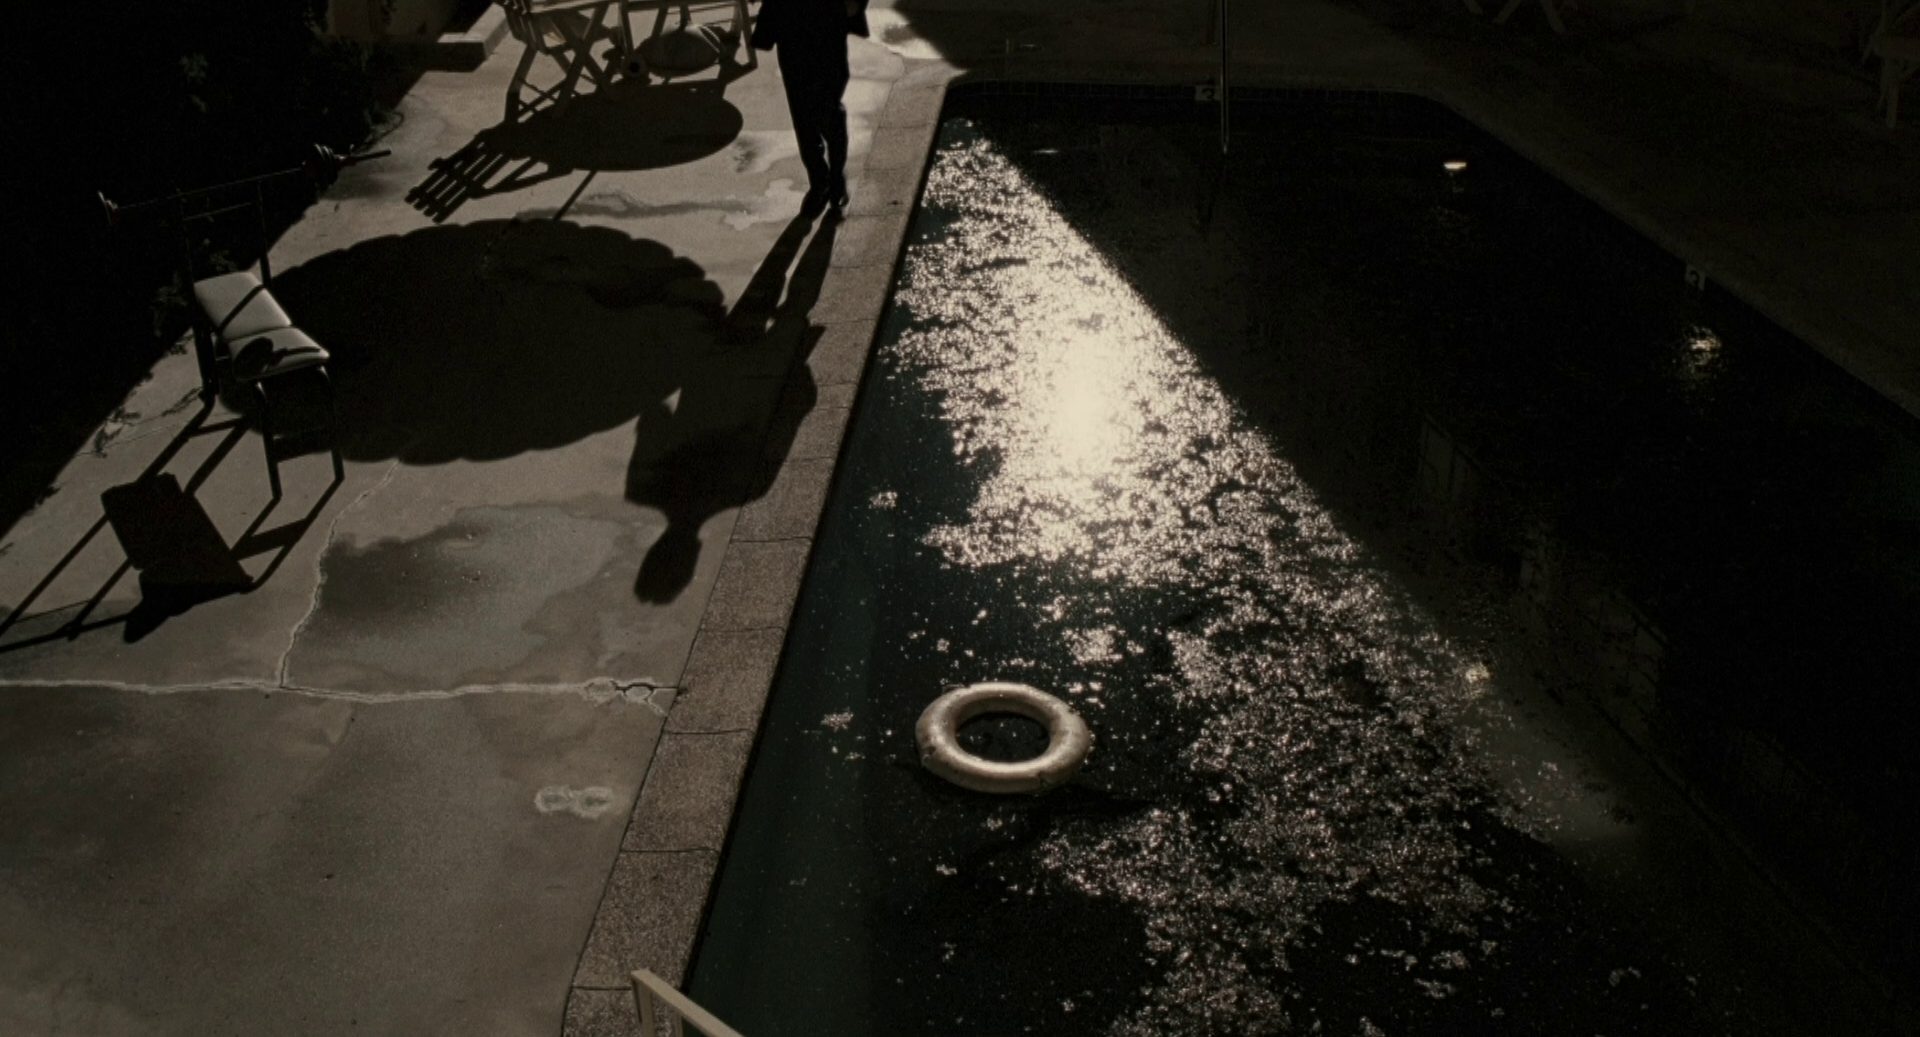 Düstere Szenerie an einem Pool, ein Schatten kündigt eine Person im Hintergrund an.